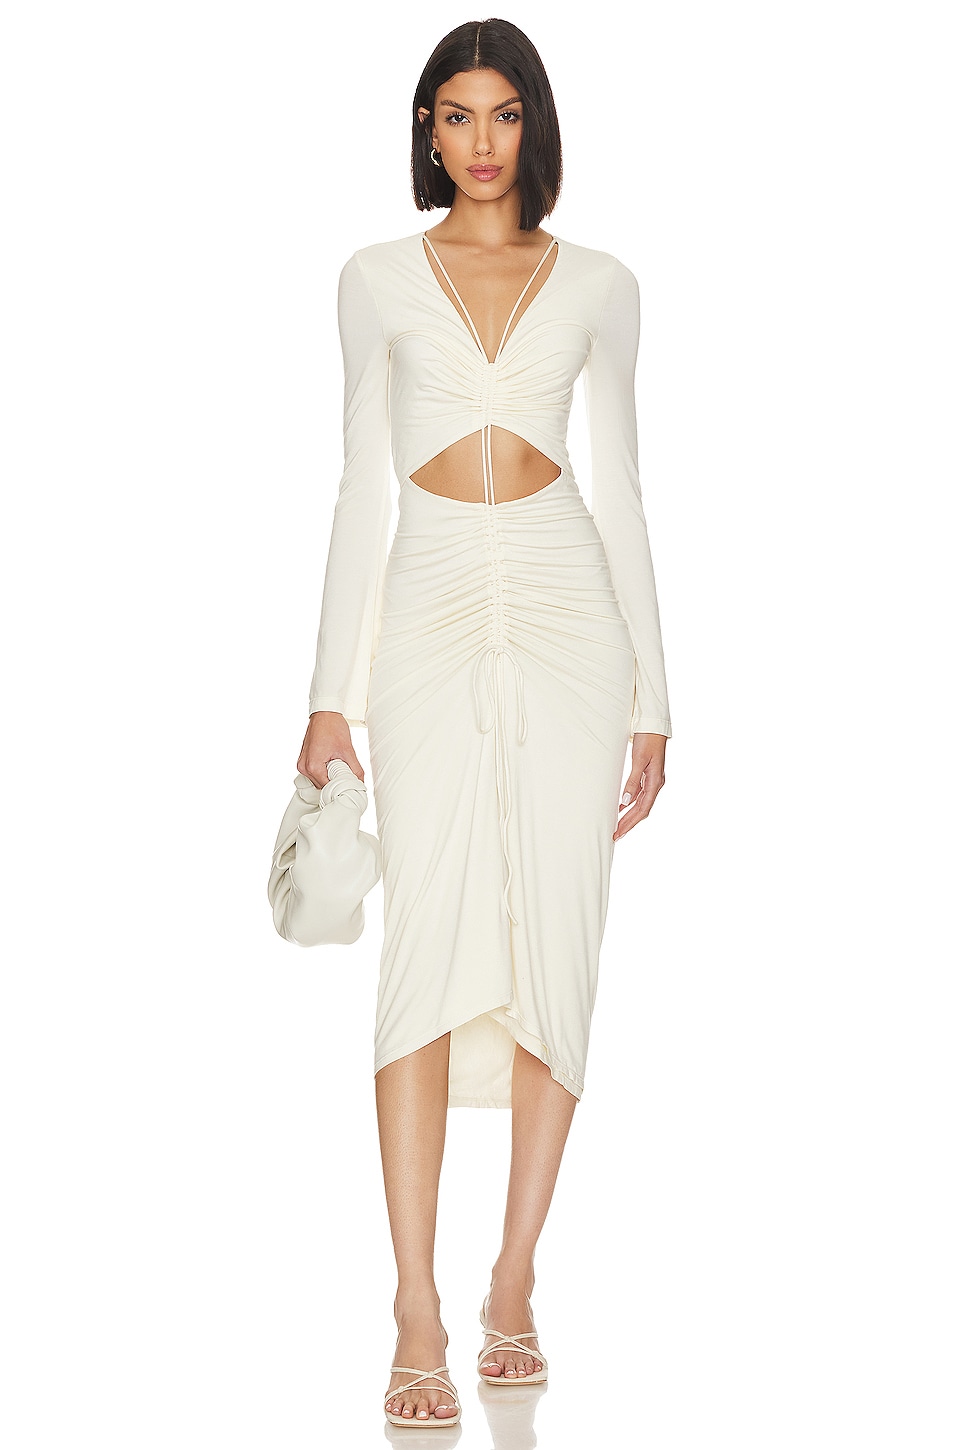 L'Academie x Jetset Christina Norae Midi Dress in Soft White